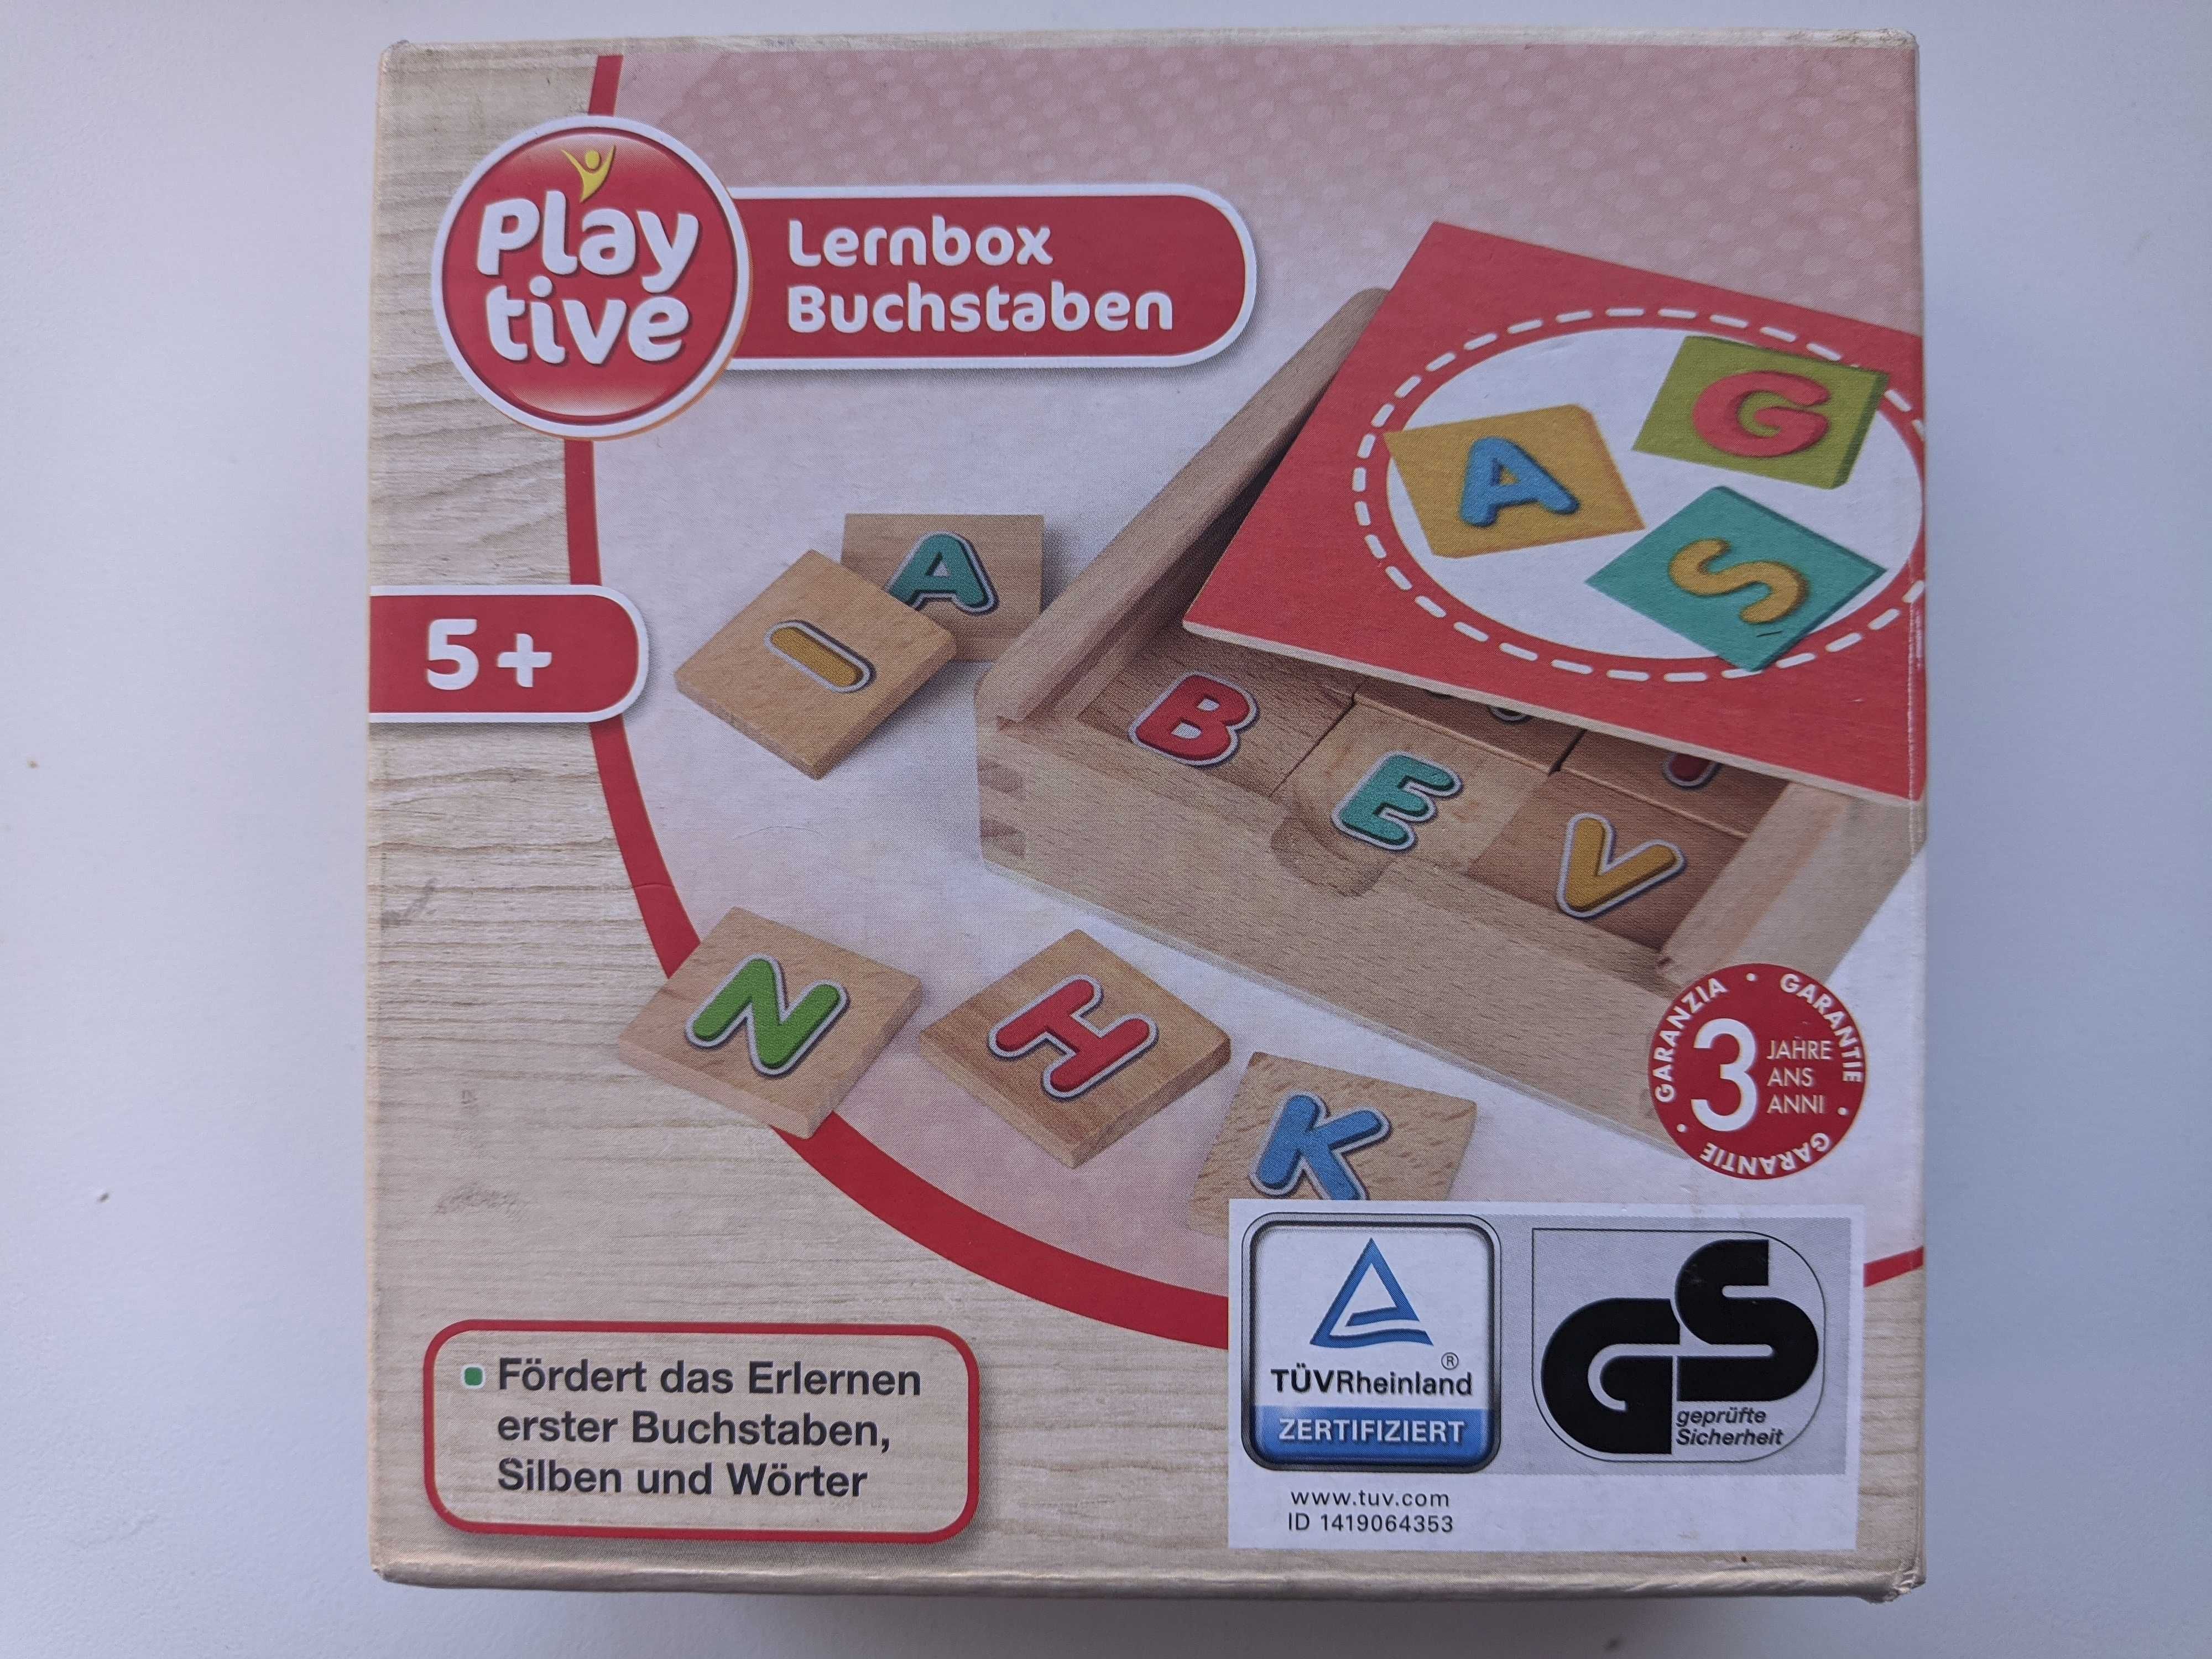 Lernbox Buchstaben Германия детская игра Учим алфавит из коробки